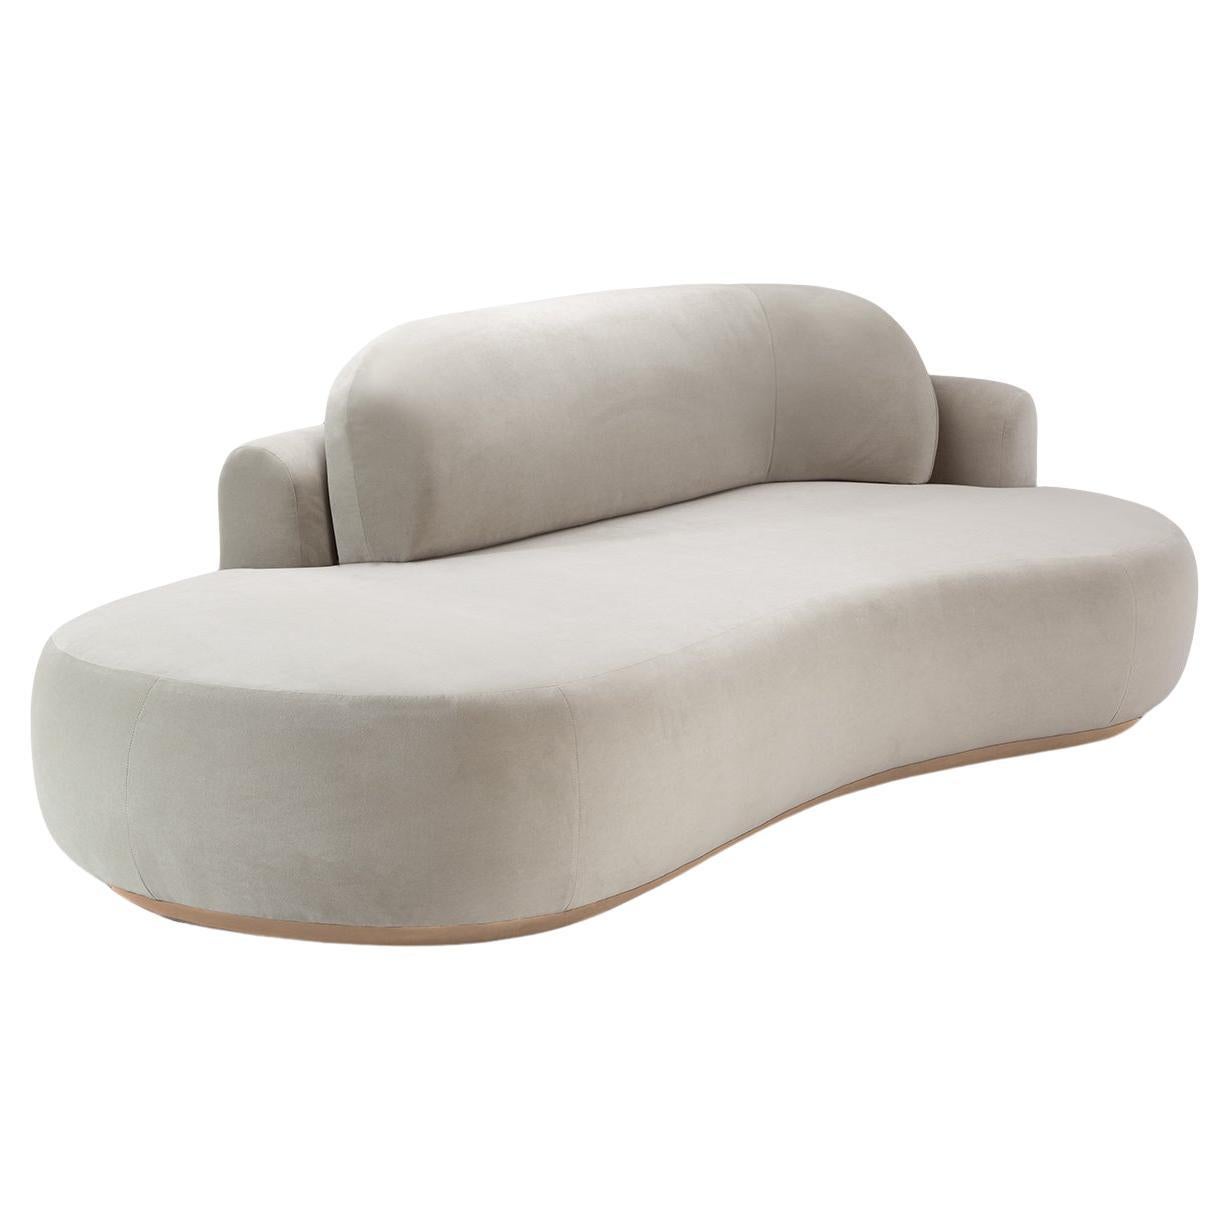 Handmade Contemporary Mambo Unlimited Ideas Naked Sofa Single Soft Upholstery